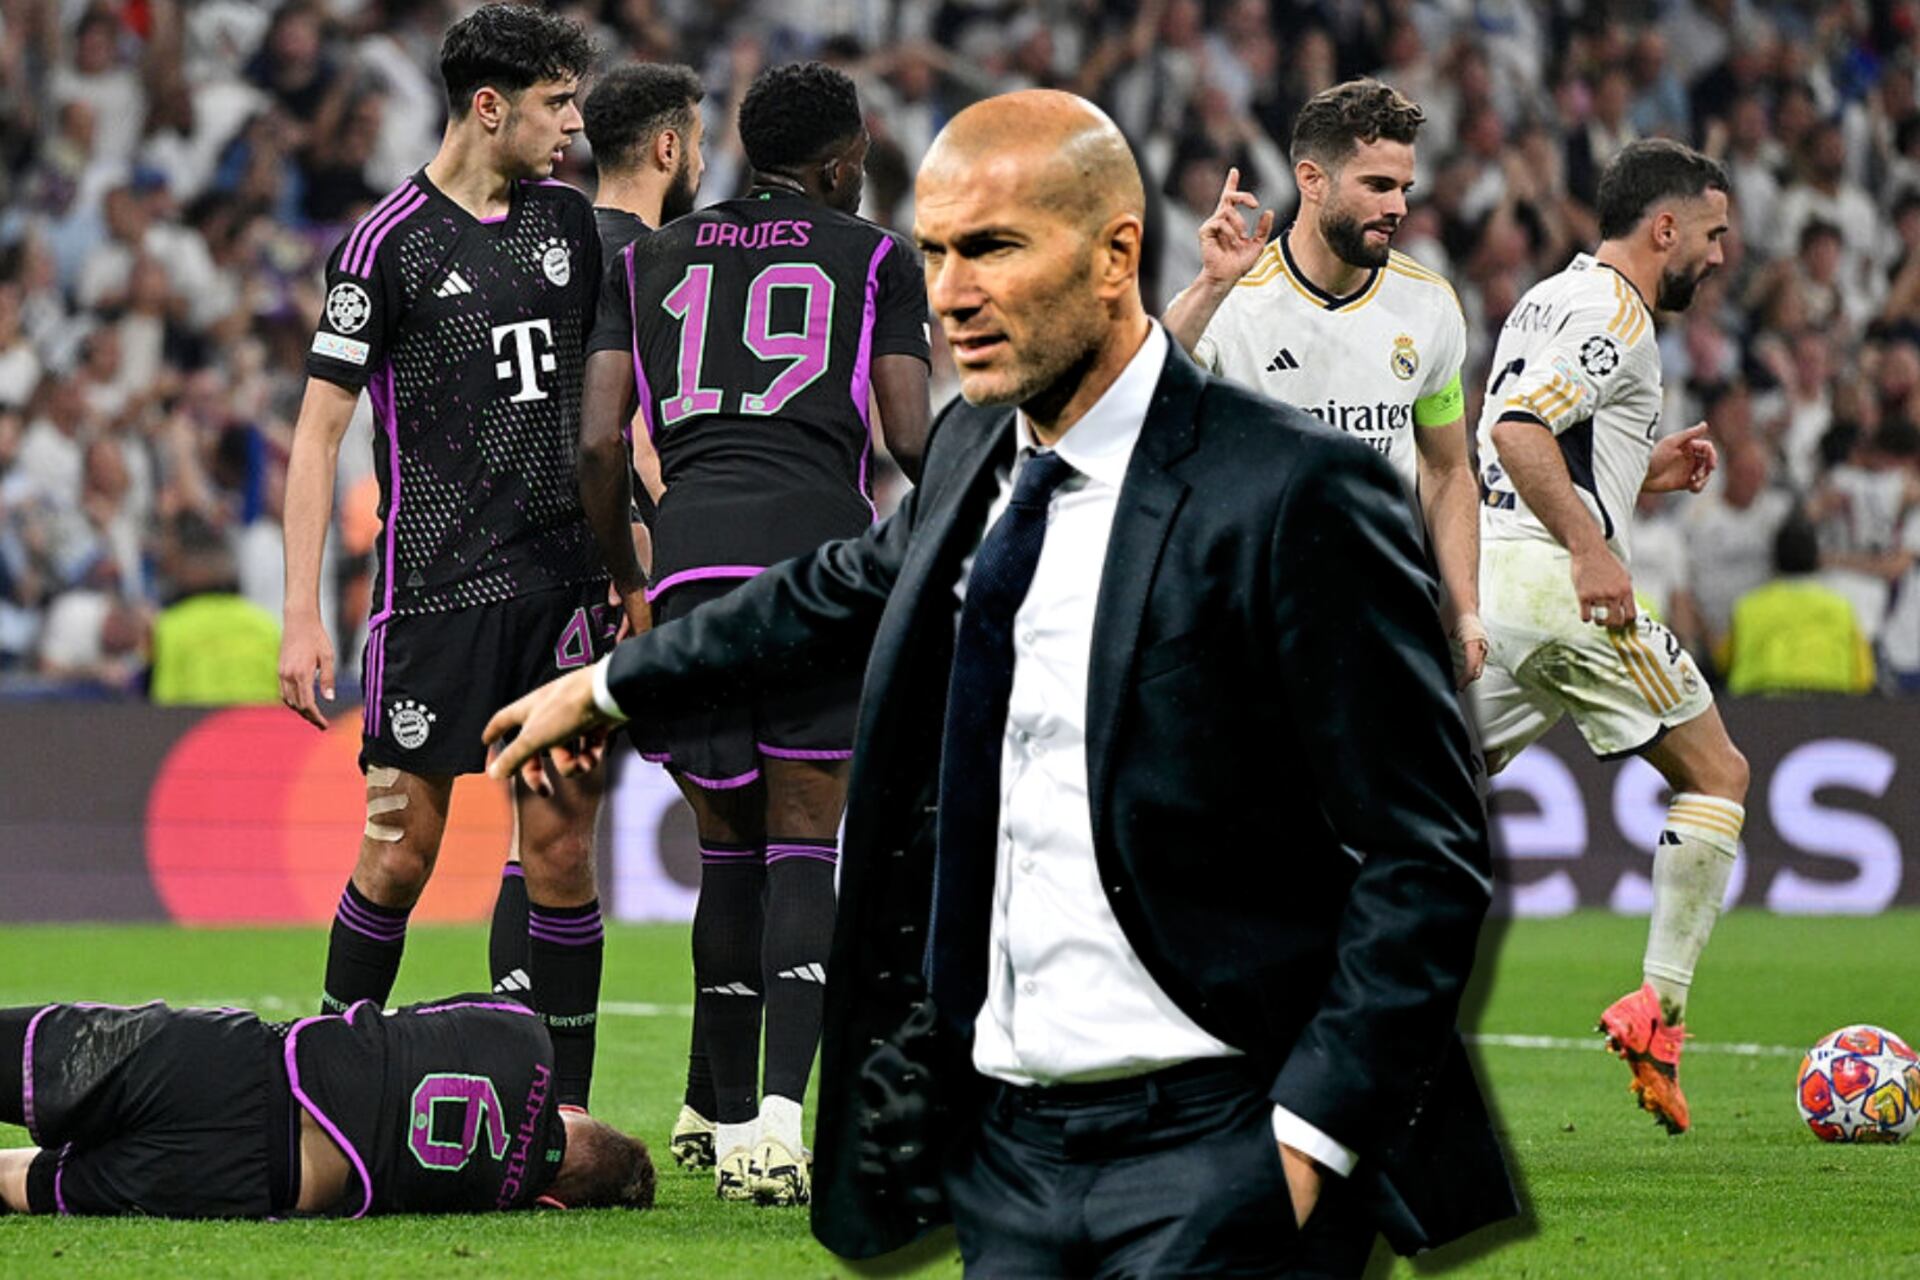 El Madrid los eliminó y ahora Zidane prefiere dirigir este club antes que el Bayern